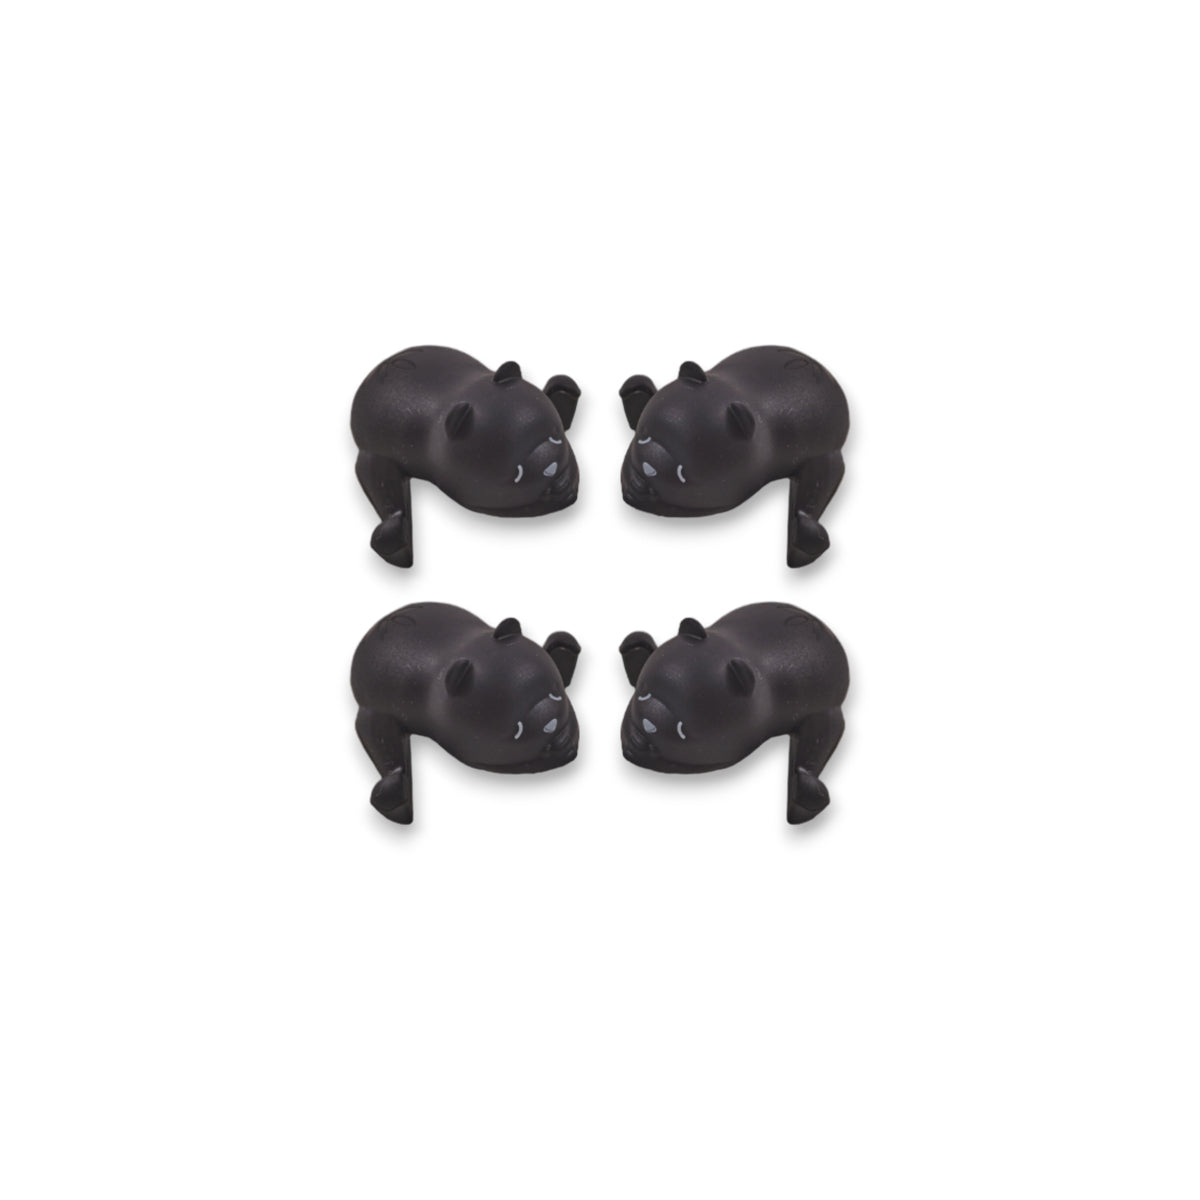 Bescherm je kindje met de Nuuroo tui hoekbeschermers in de kleur zwart. De hoekbeschermers zijn schattige beertjes en zijn in verschillende kleuren verkrijgbaar. 4 per set. VanZus